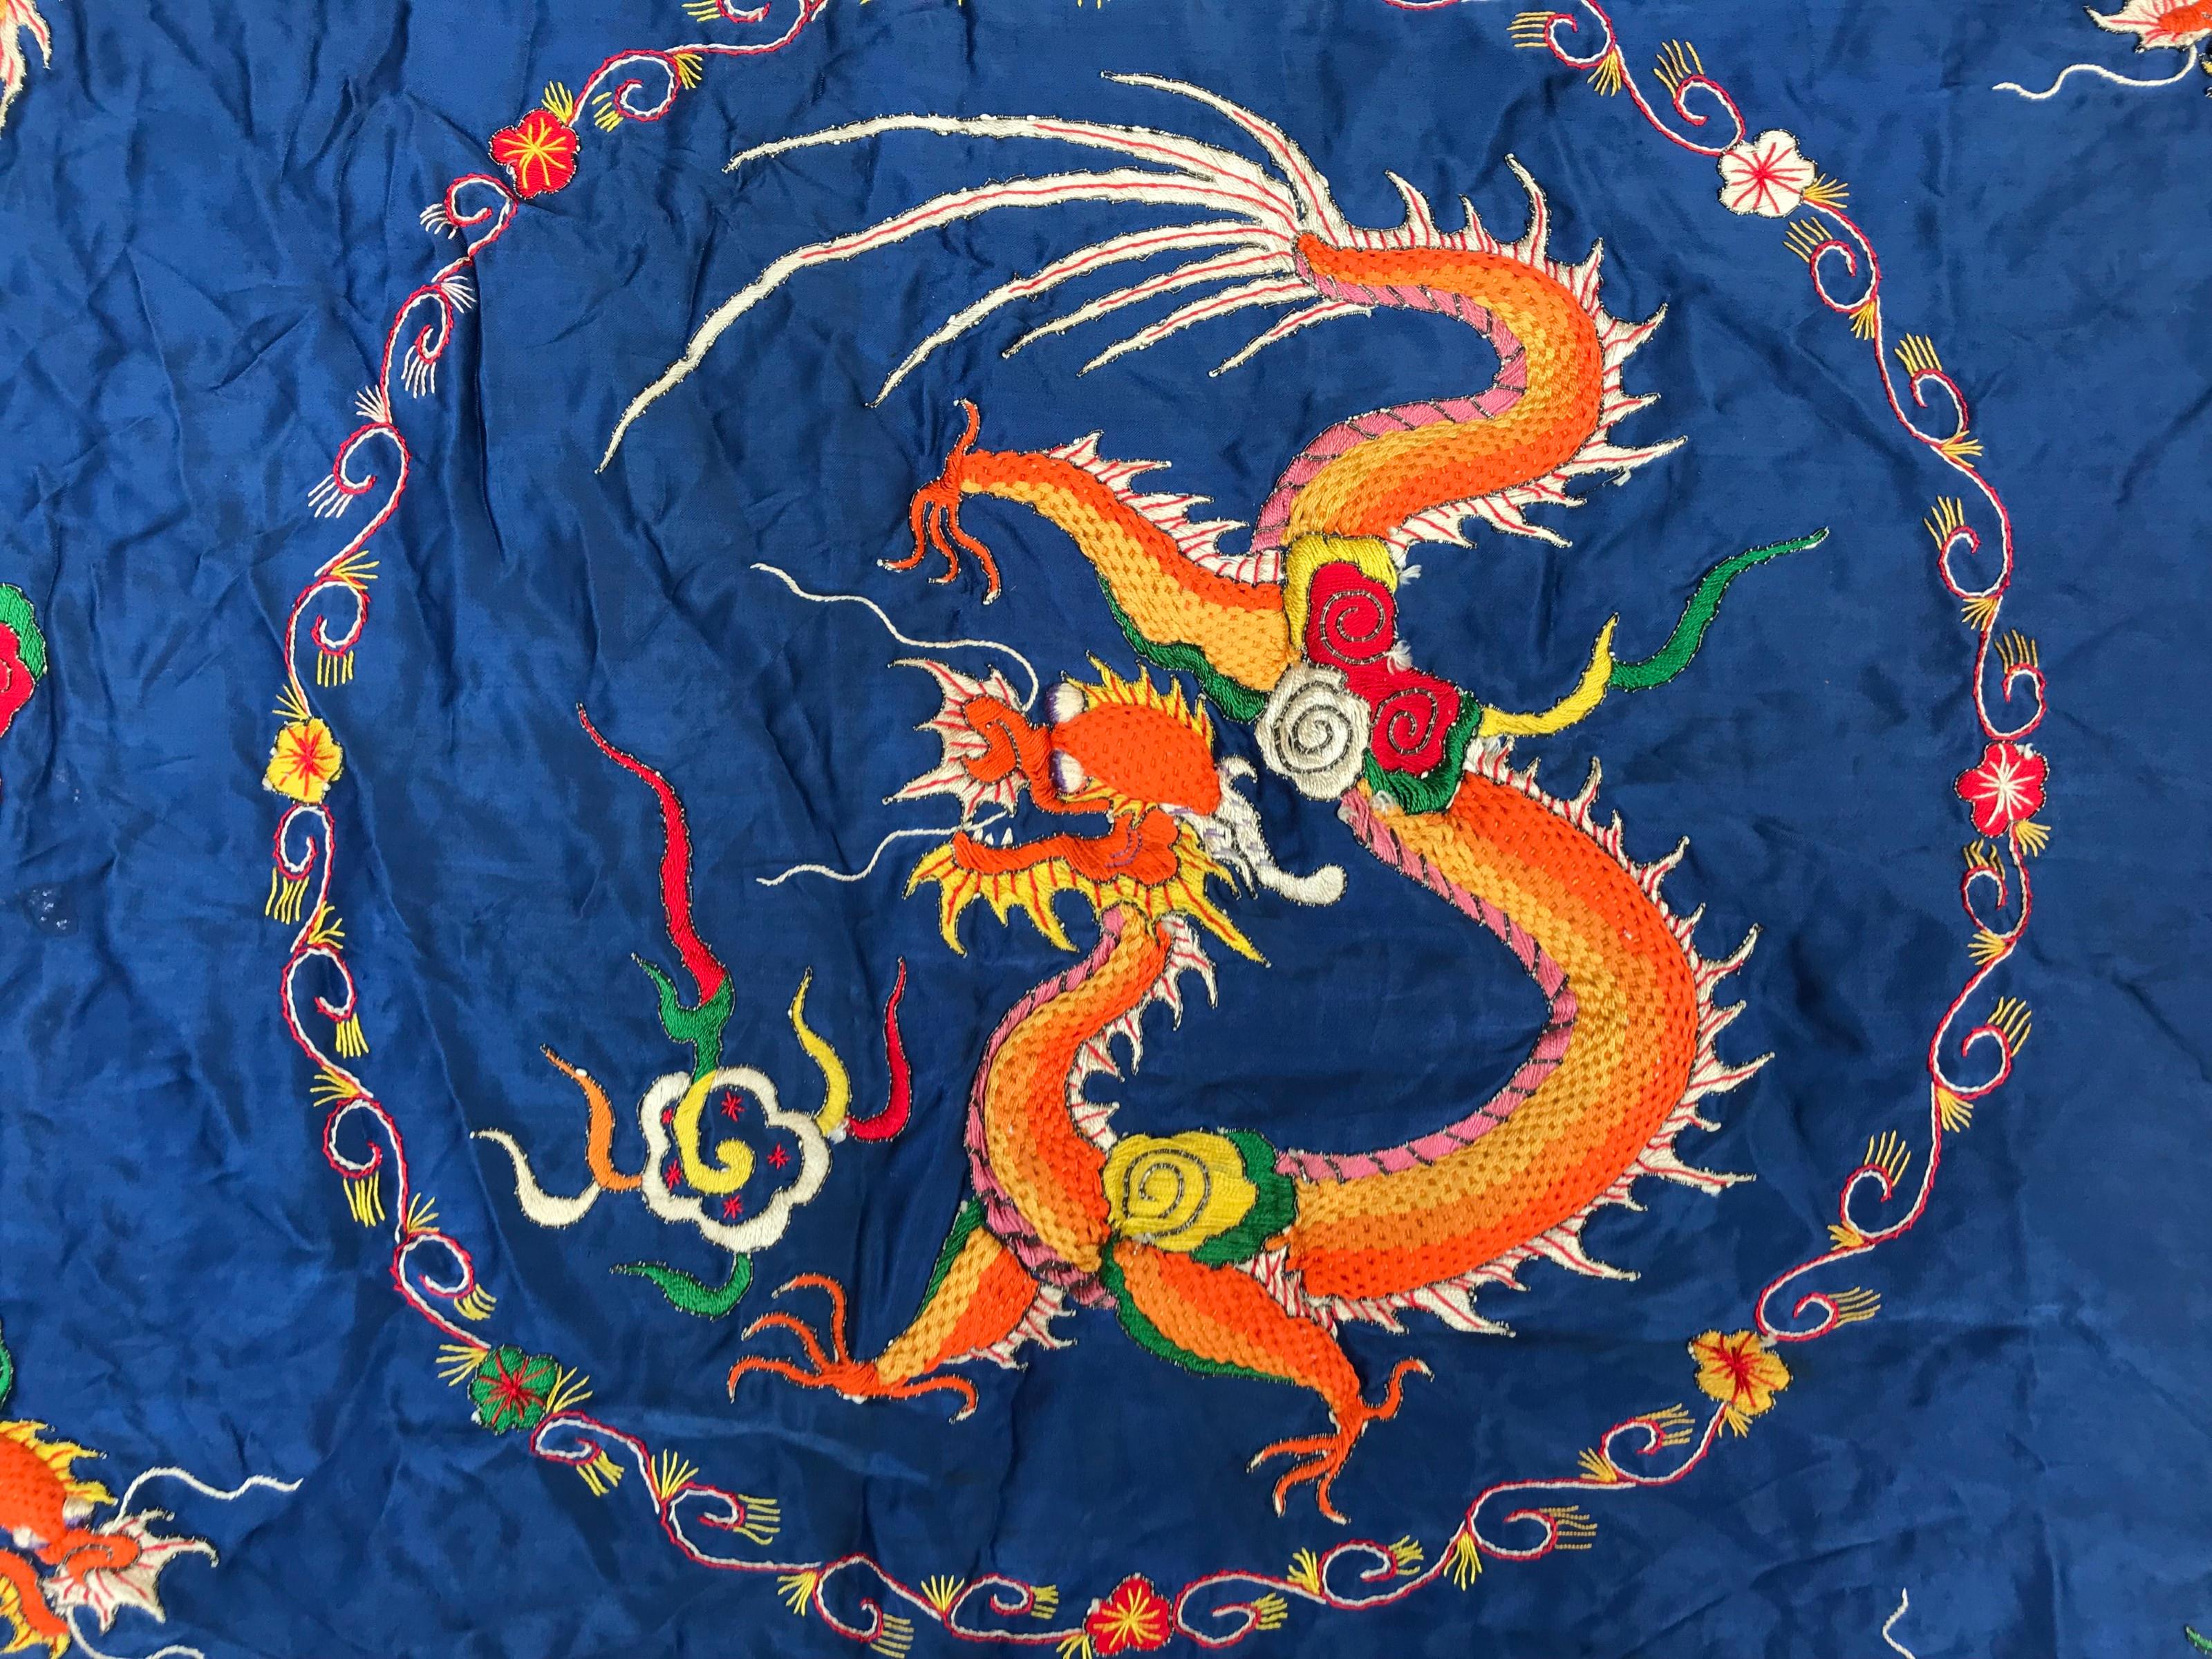 Hübsches Stickereipaneel mit Drachenmotiv, vollständig von Hand mit Seide auf Seide gestickt 
Die Drachen sind als Relief gestaltet.